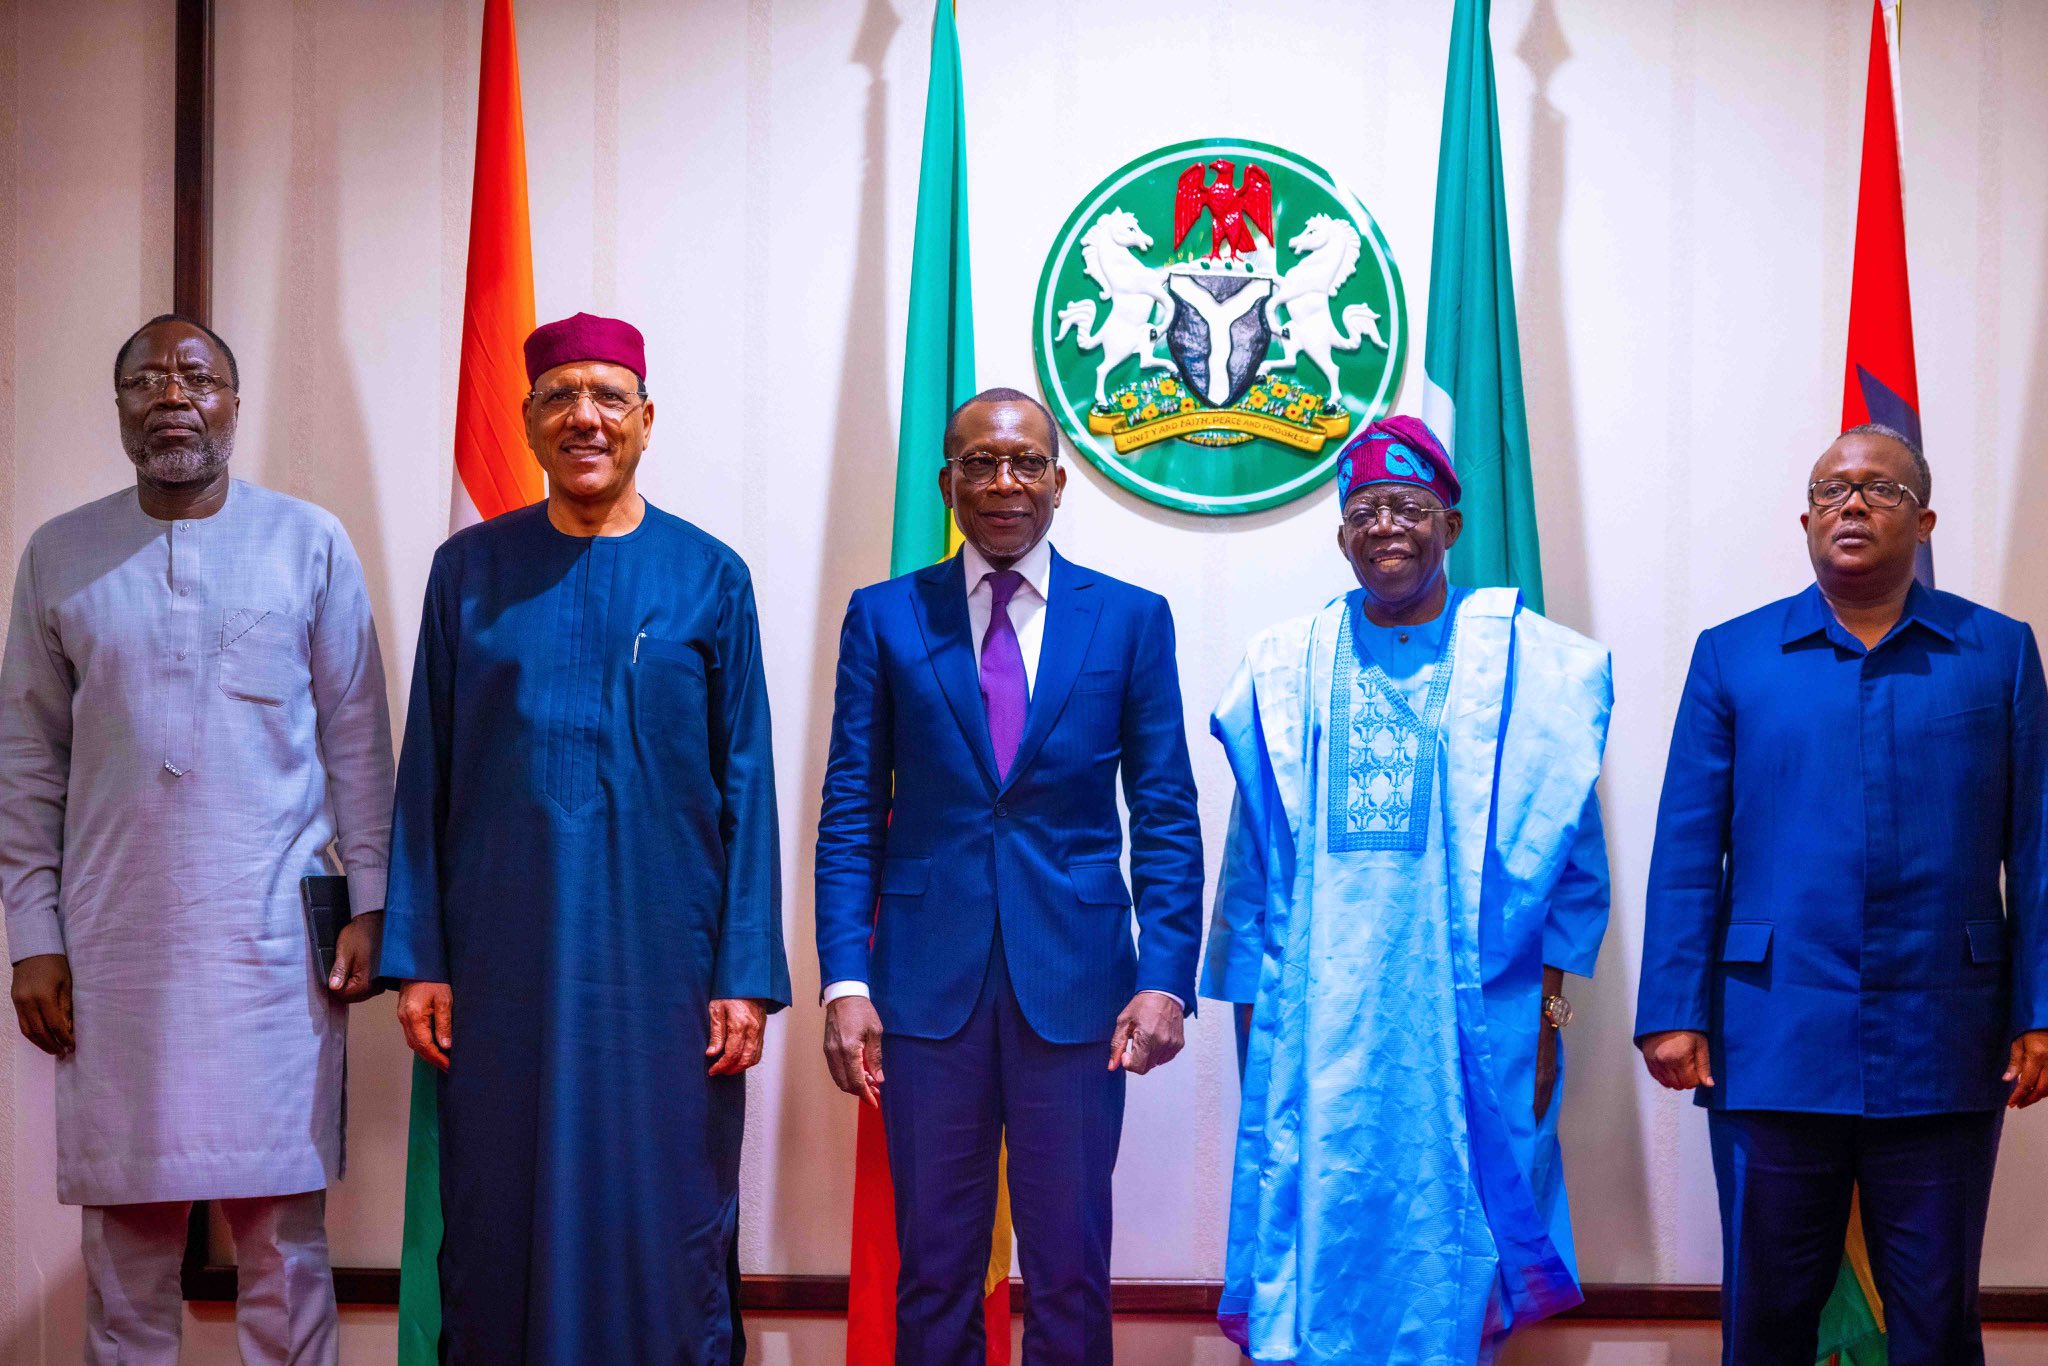 Les présidents béninois, nigérians, nigériens et bissau-guinéens se retrouvent au sommet présidentiel de la troïka+1 au Nigéria